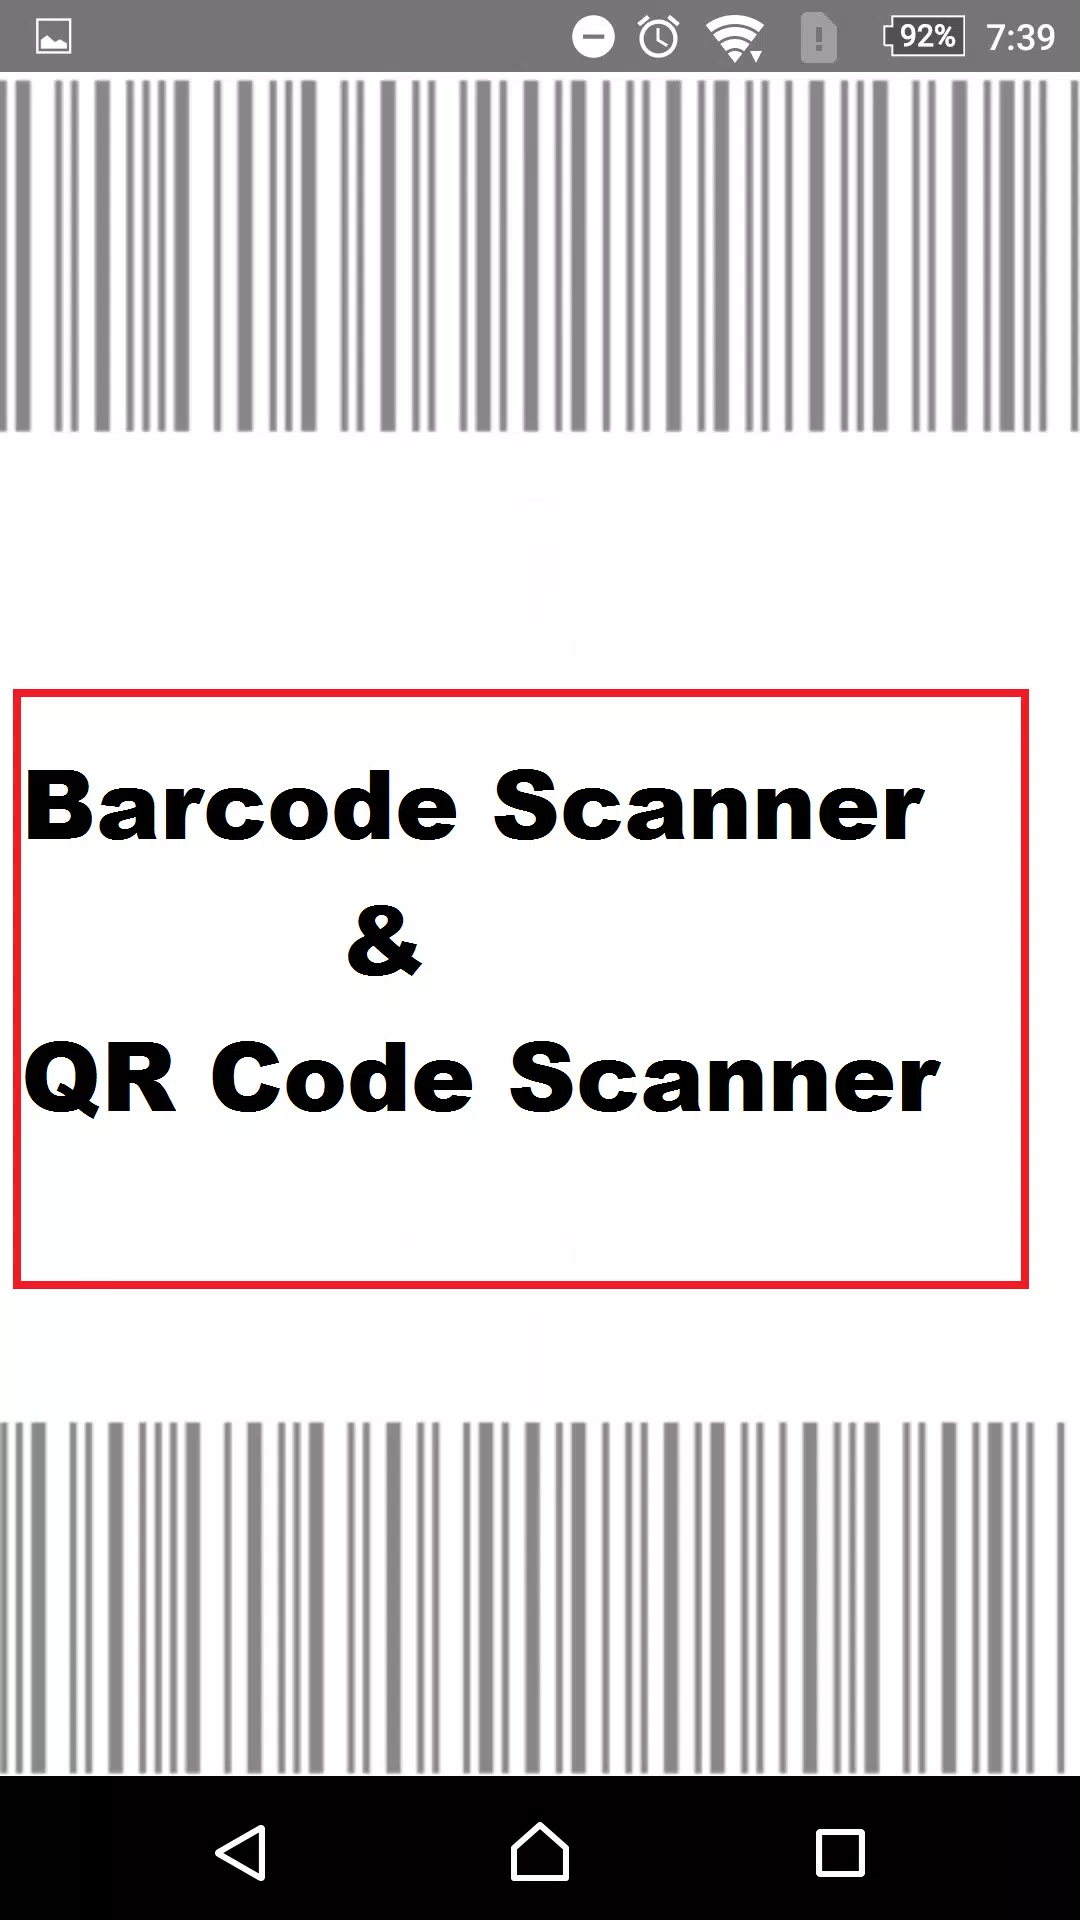 Online Barcode Scanner